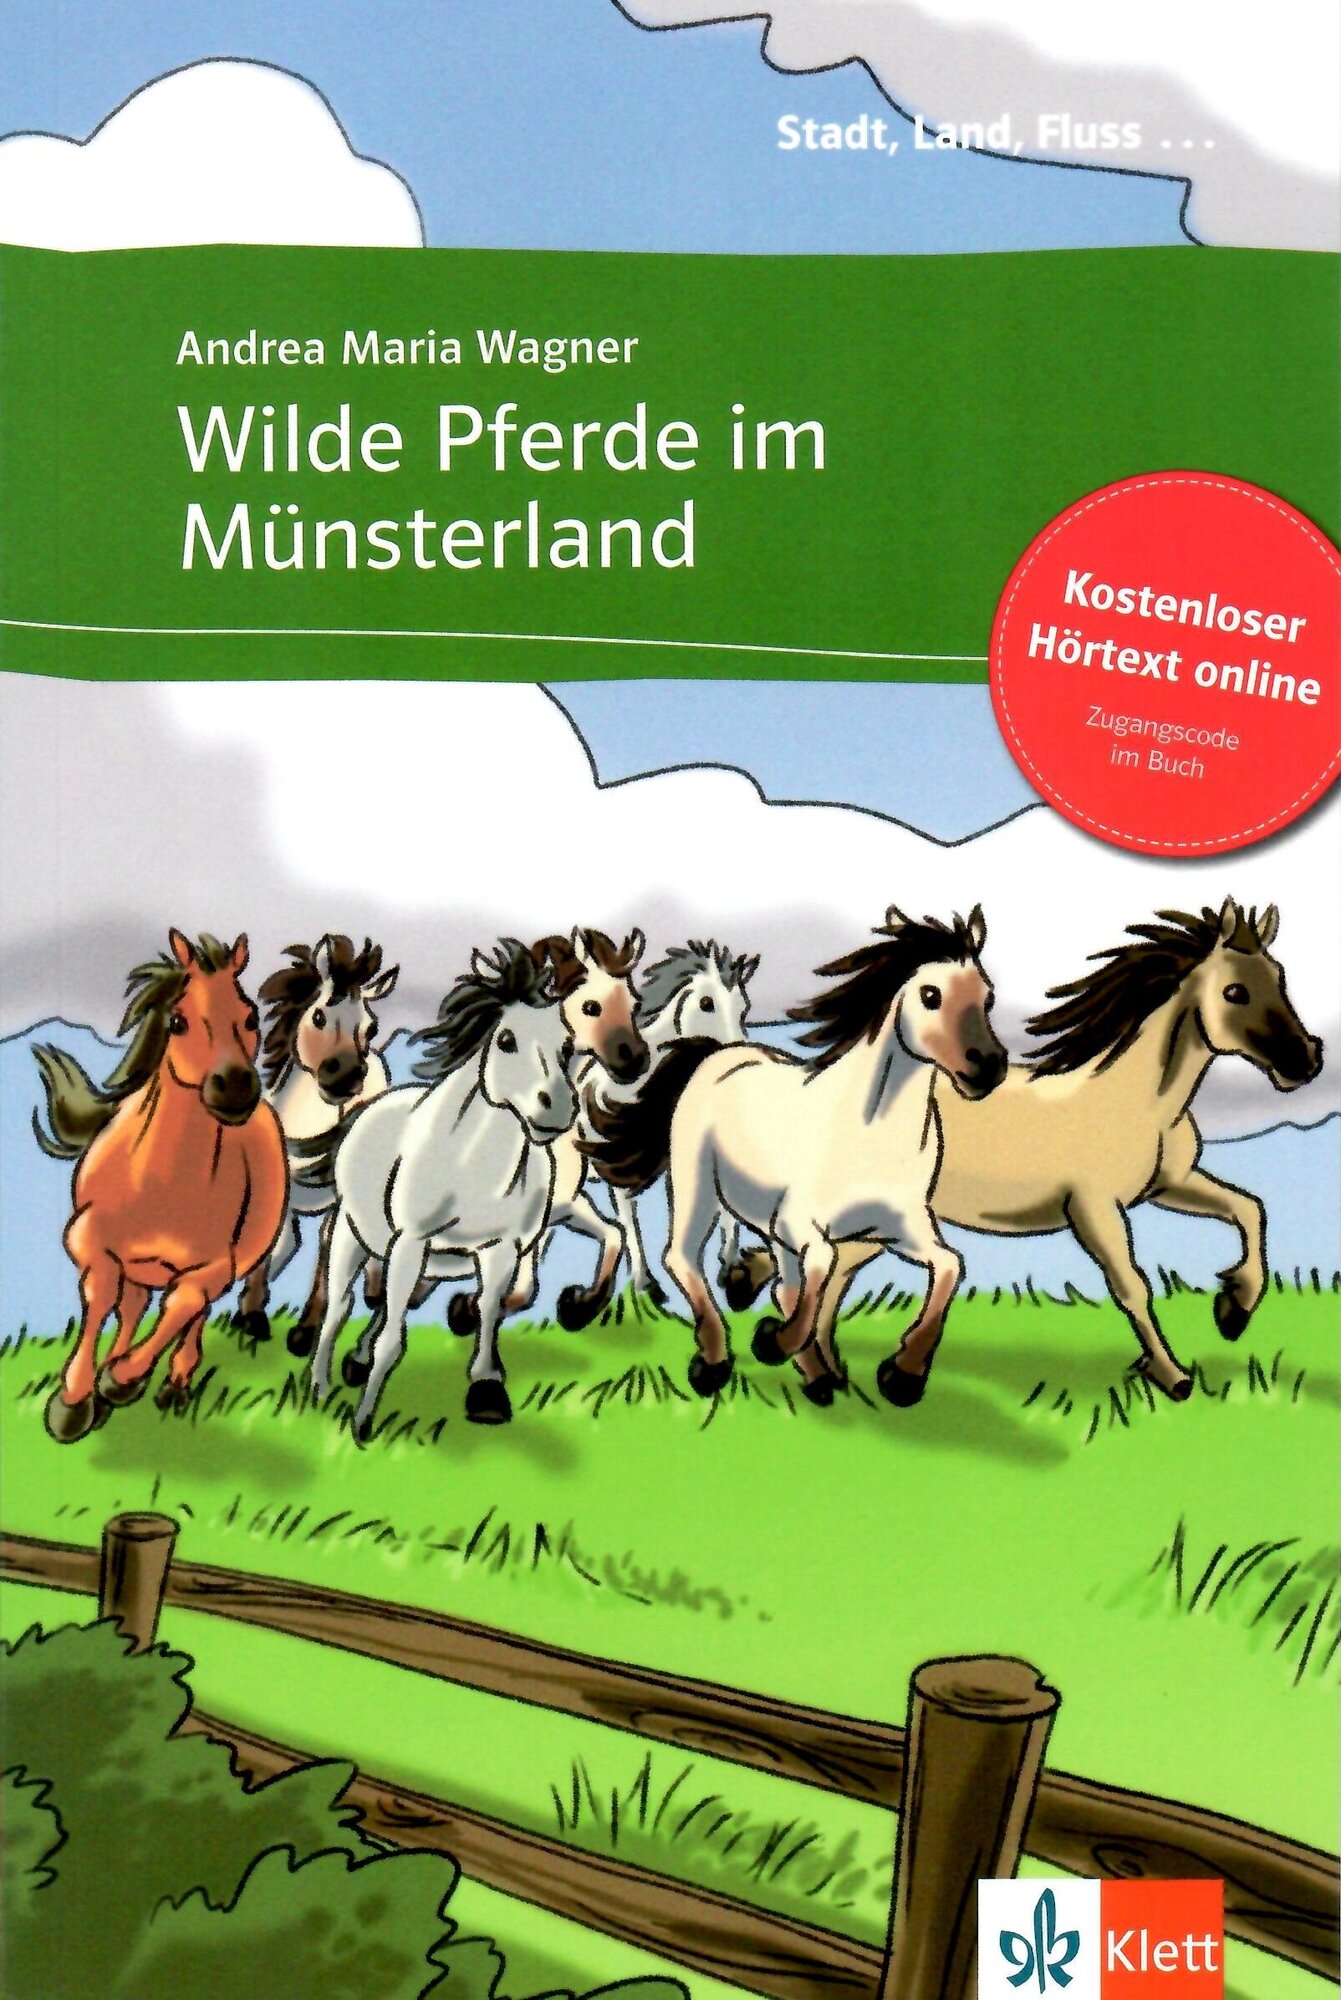 Wilde Pferde im Münsterland + Online-Angebot - фото №1